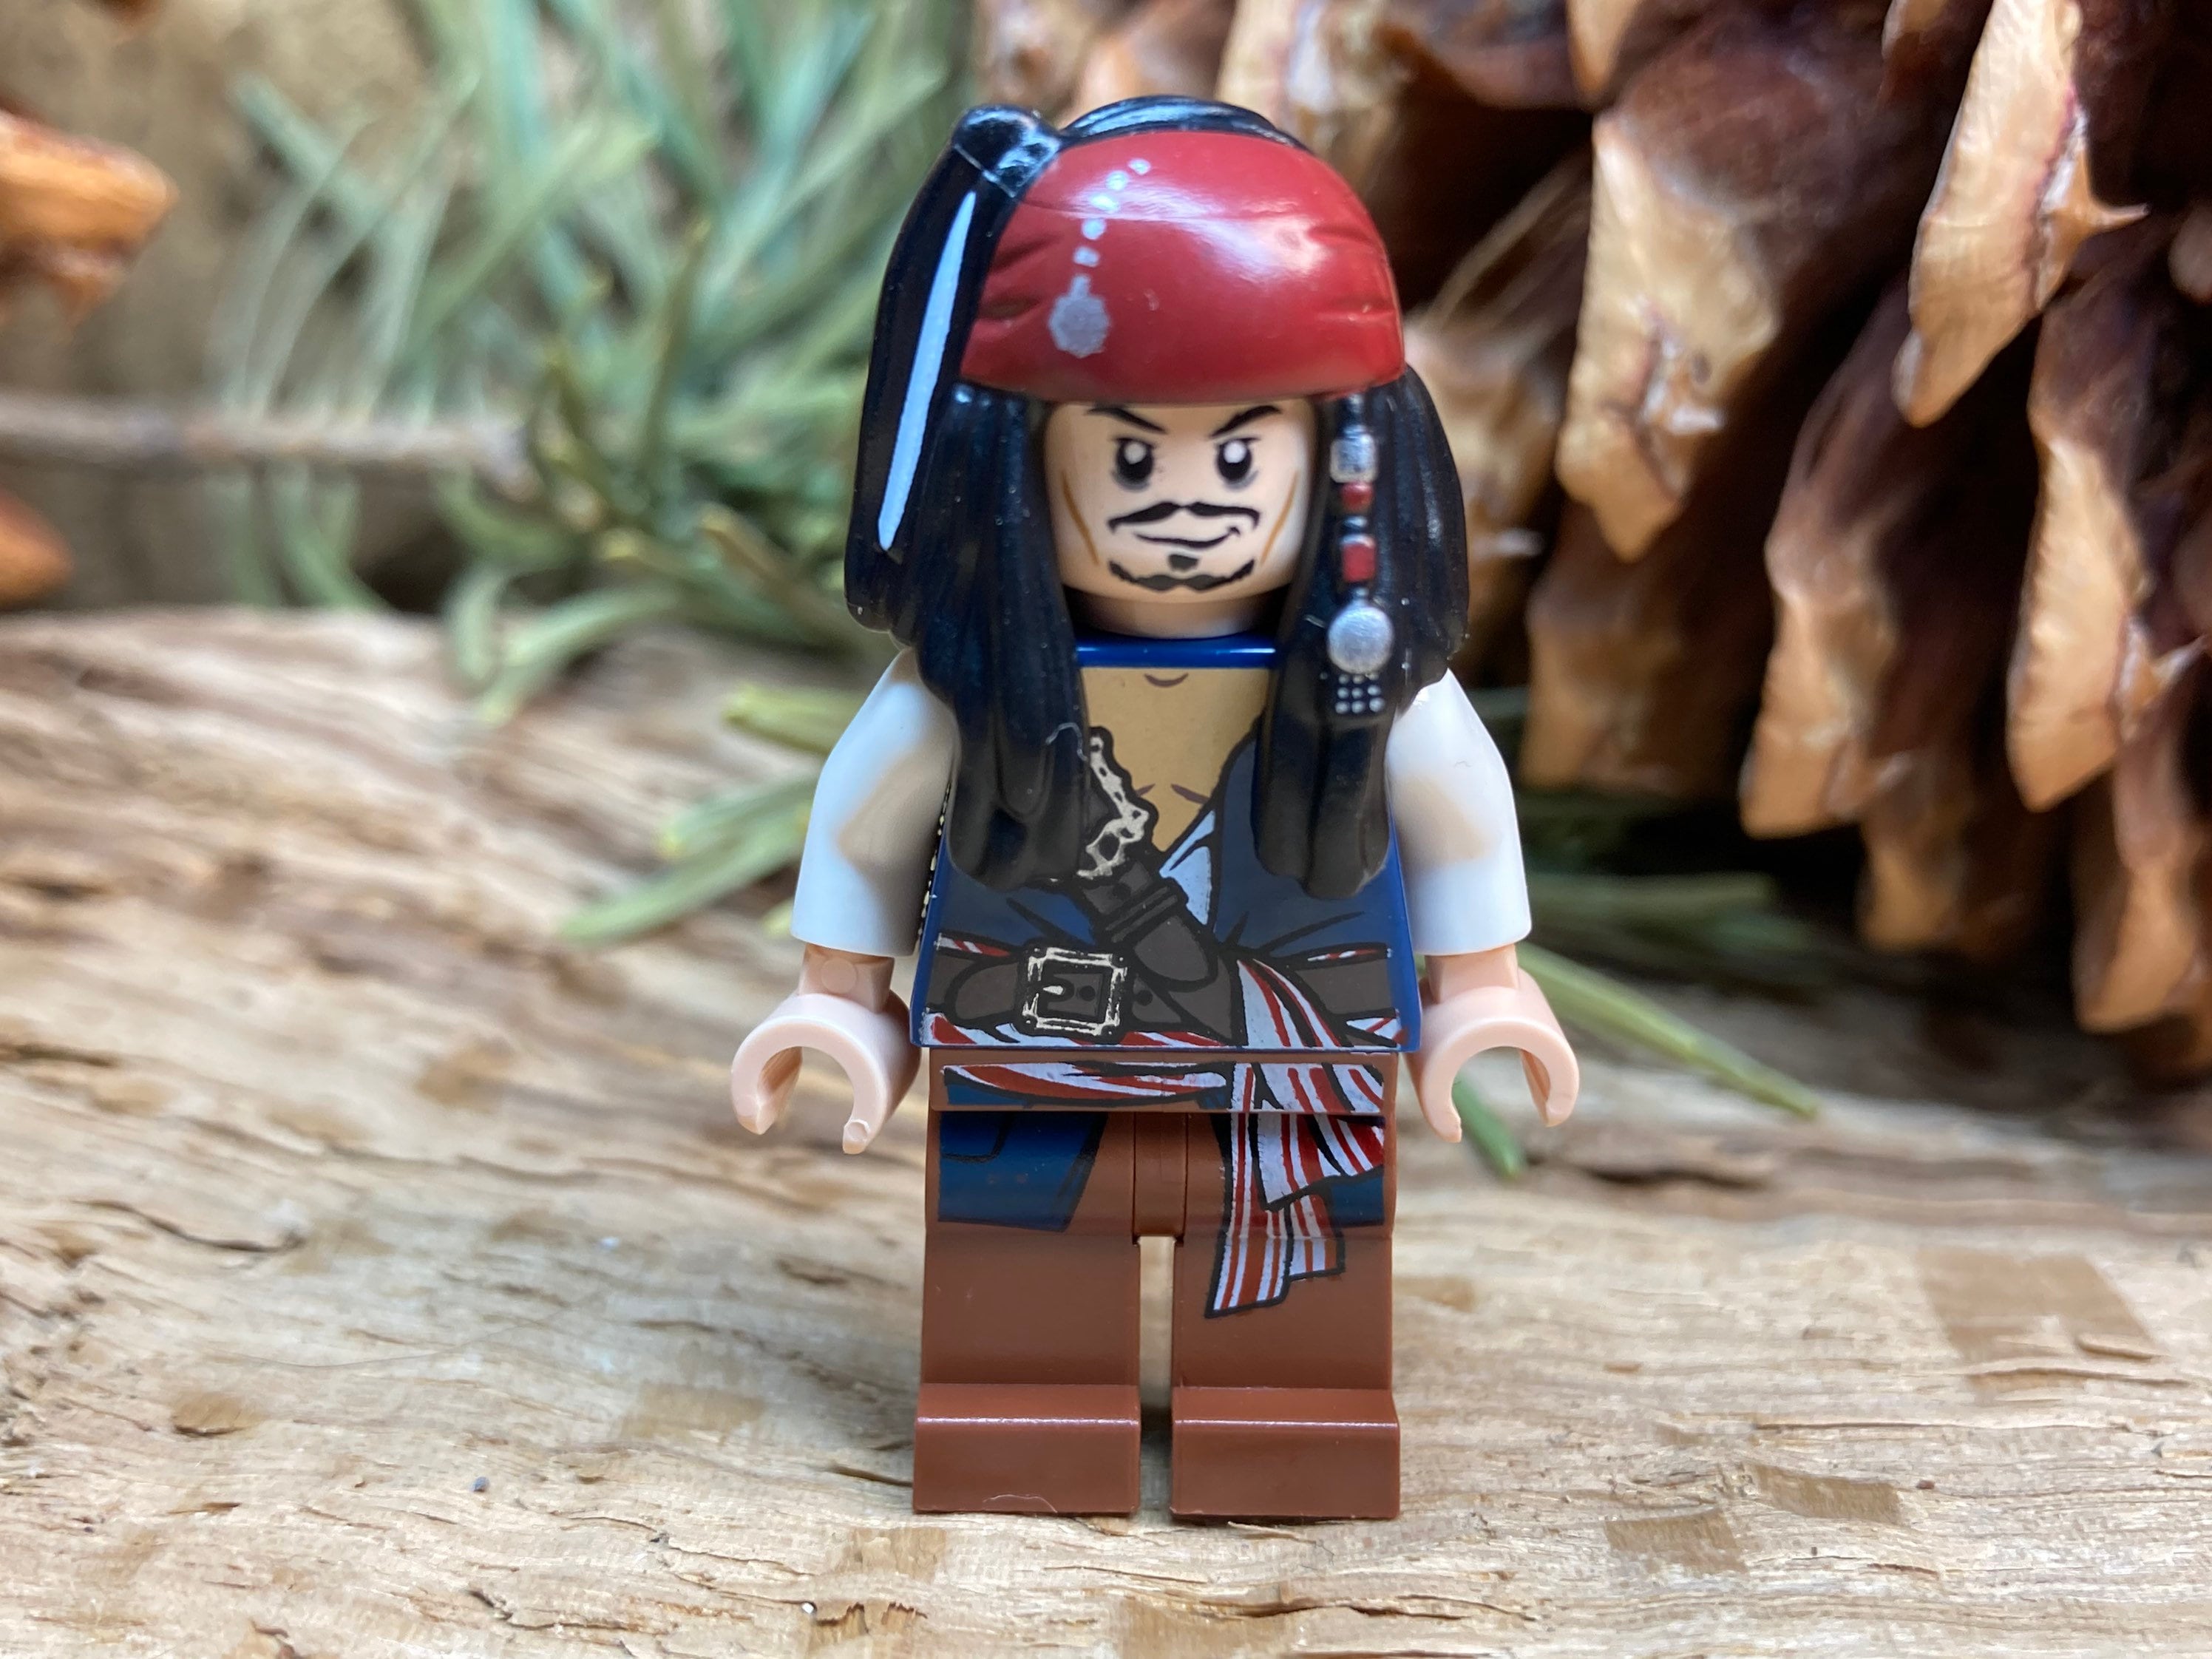 Fantasia do Capitão Jack Sparrow para crianças dos Piratas do Caribe da